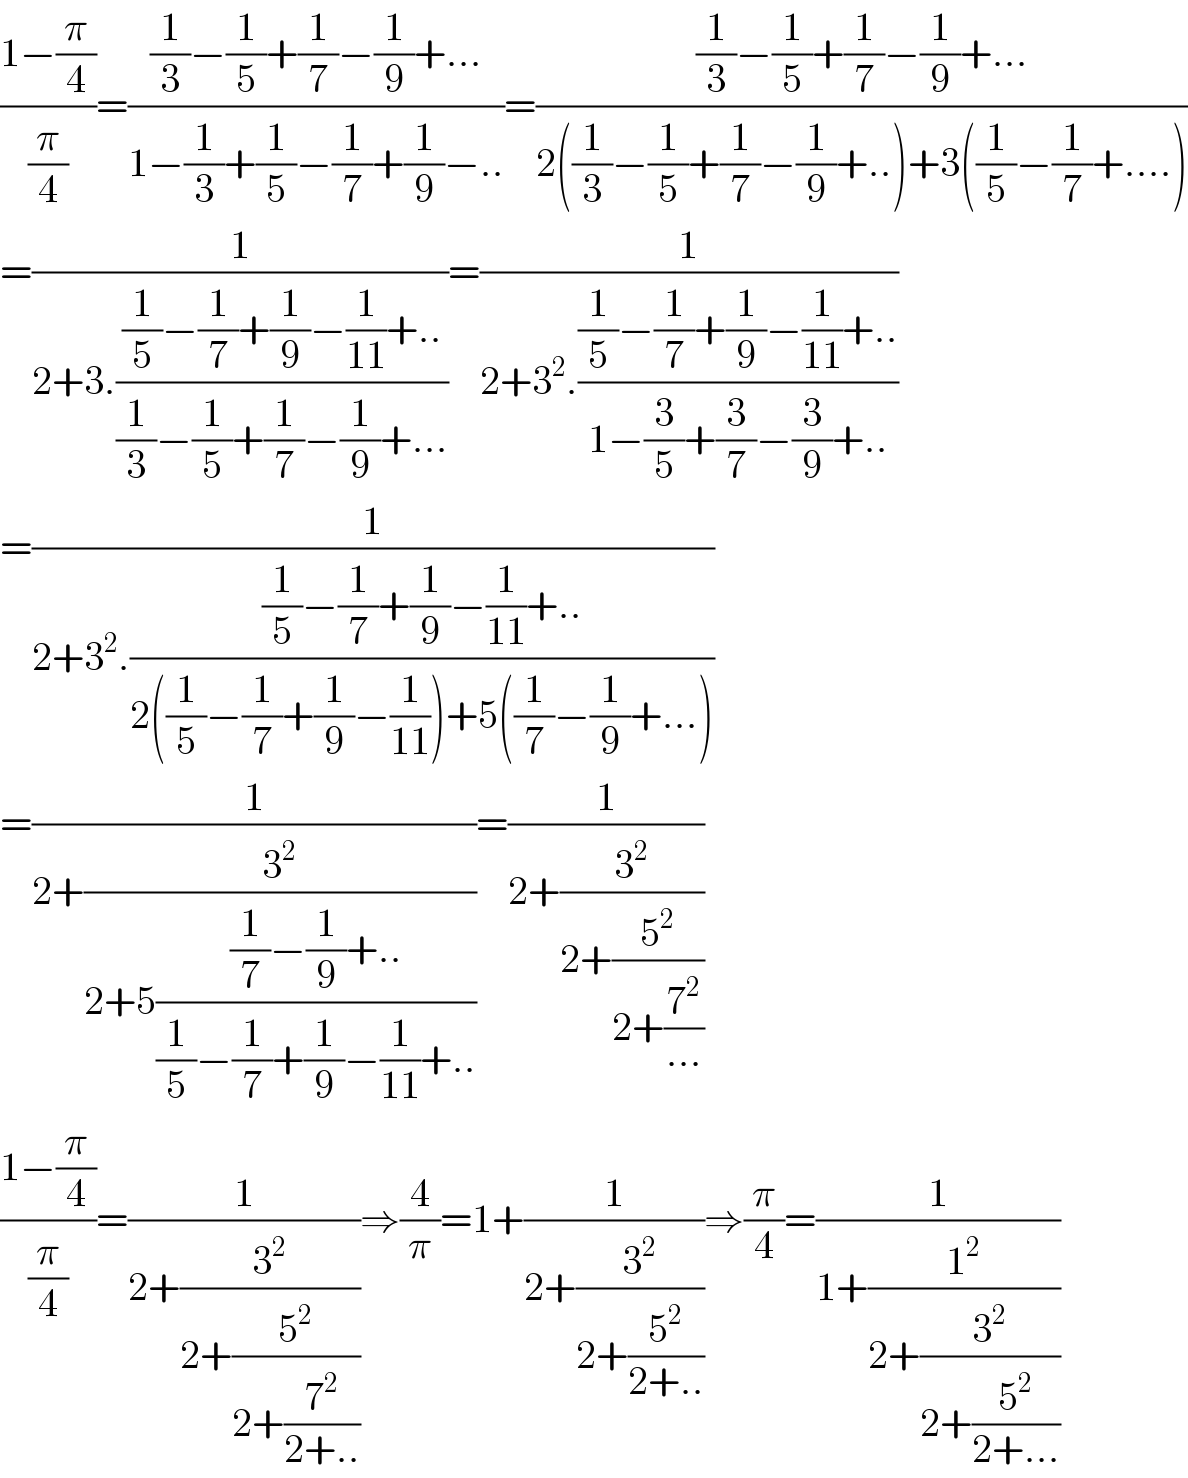 ((1−(π/4))/(π/4))=(((1/3)−(1/5)+(1/7)−(1/9)+...)/(1−(1/3)+(1/5)−(1/7)+(1/9)−..))=(((1/3)−(1/5)+(1/7)−(1/9)+...)/(2((1/3)−(1/5)+(1/7)−(1/9)+..)+3((1/5)−(1/7)+....)))  =(1/(2+3.(((1/5)−(1/7)+(1/9)−(1/(11))+..)/((1/3)−(1/5)+(1/7)−(1/9)+...))))=(1/(2+3^2 .(((1/5)−(1/7)+(1/9)−(1/(11))+..)/(1−(3/5)+(3/7)−(3/9)+..))))  =(1/(2+3^2 .(((1/5)−(1/7)+(1/9)−(1/(11))+..)/(2((1/5)−(1/7)+(1/9)−(1/(11)))+5((1/7)−(1/9)+...)))))  =(1/(2+(3^2 /(2+5(((1/7)−(1/9)+..)/((1/5)−(1/7)+(1/9)−(1/(11))+..))))))=(1/(2+(3^2 /(2+(5^2 /(2+(7^2 /(...))))))))  ((1−(π/4))/(π/4))=(1/(2+(3^2 /(2+(5^2 /(2+(7^2 /(2+..))))))))⇒(4/π)=1+(1/(2+(3^2 /(2+(5^2 /(2+..))))))⇒(π/4)=(1/(1+(1^2 /(2+(3^2 /(2+(5^2 /(2+...))))))))  